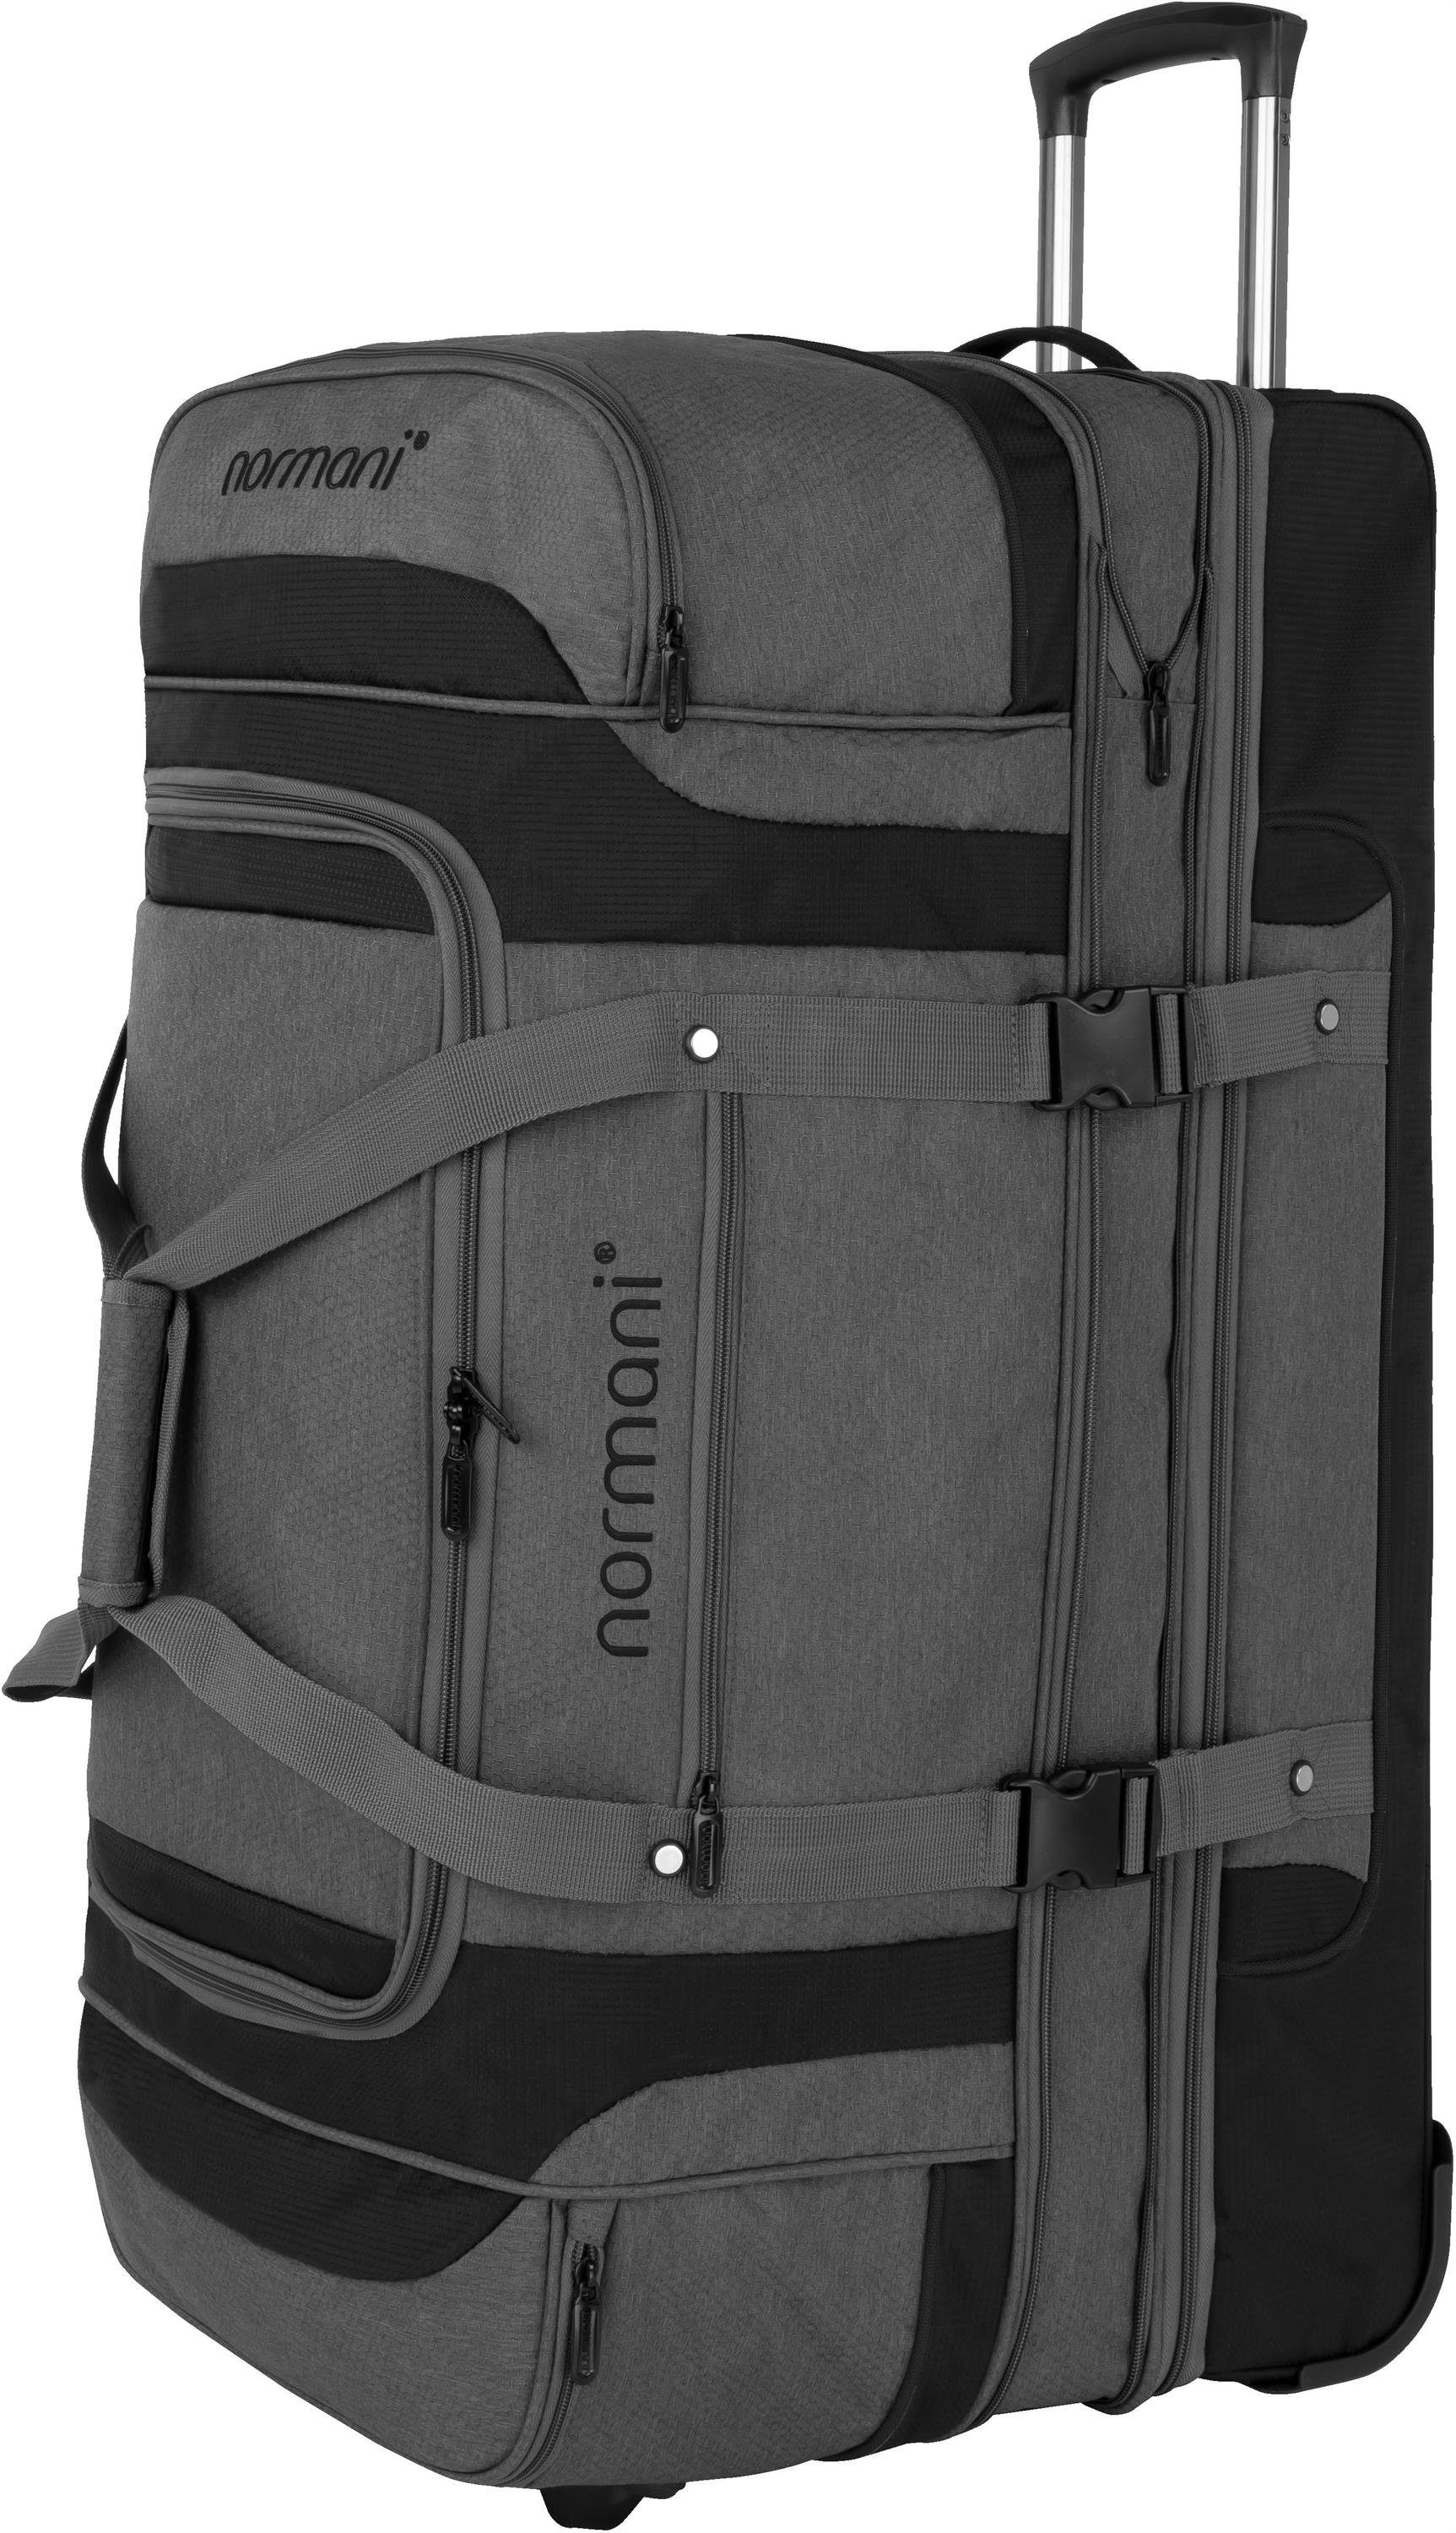 normani Reisetasche Reisetrolley 120-150 L Gigaro, Reisetasche erweiterbar von 120 auf 150 Liter Grau/Schwarz